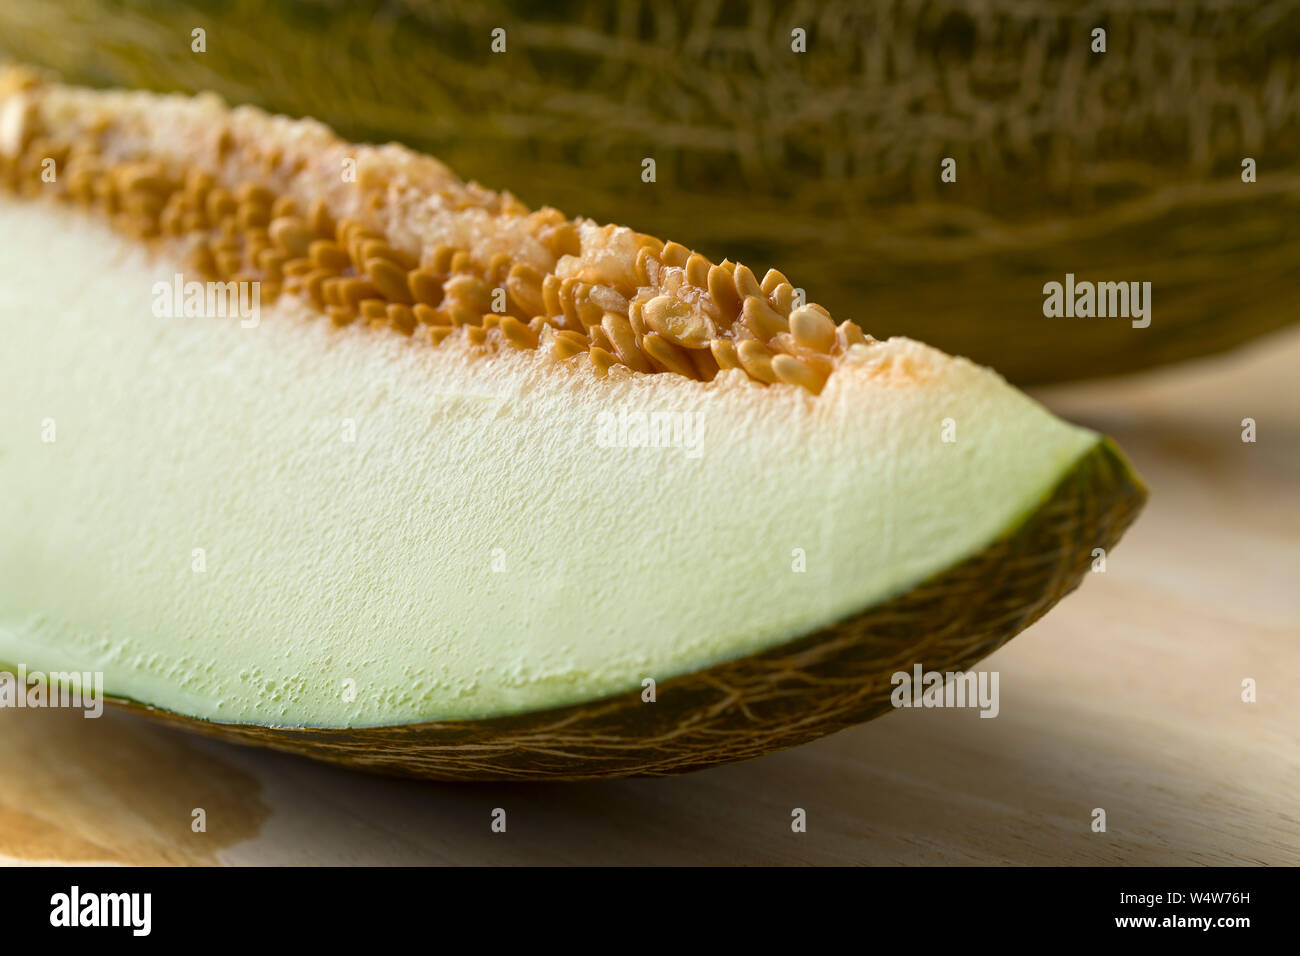 Pieza de un jugoso melón piel de sapo con una cáscara verde blotched cerrar Foto de stock